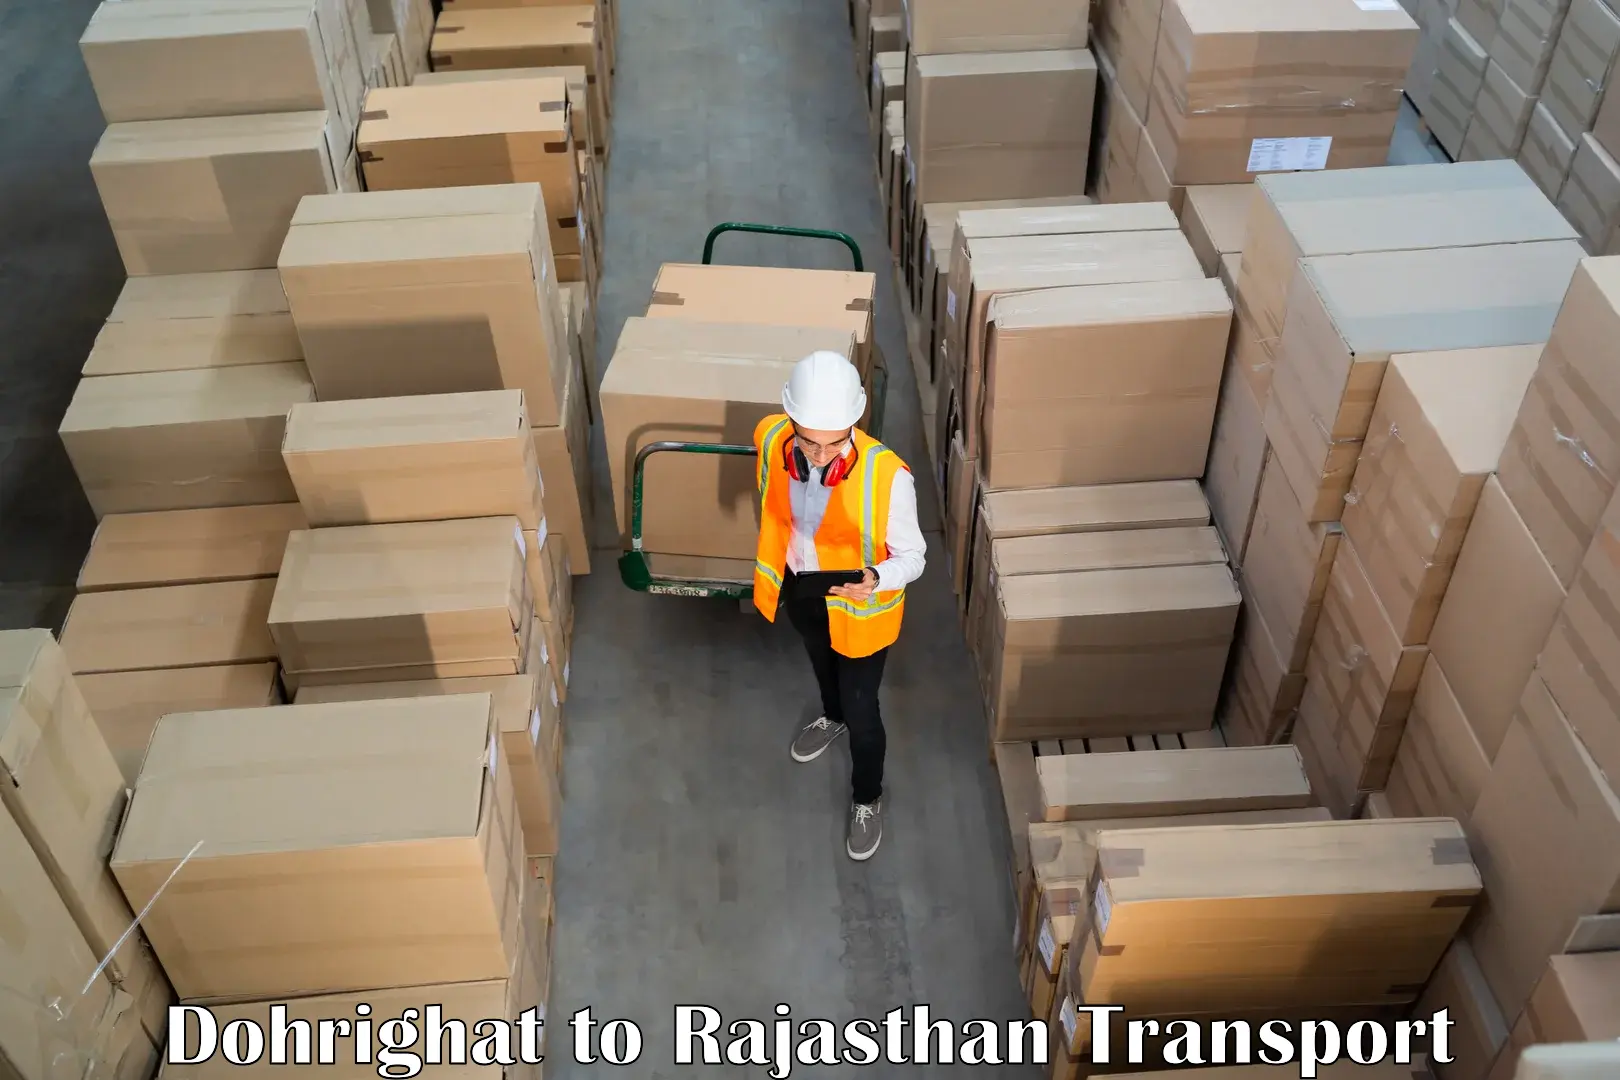 Commercial transport service Dohrighat to Bikaner